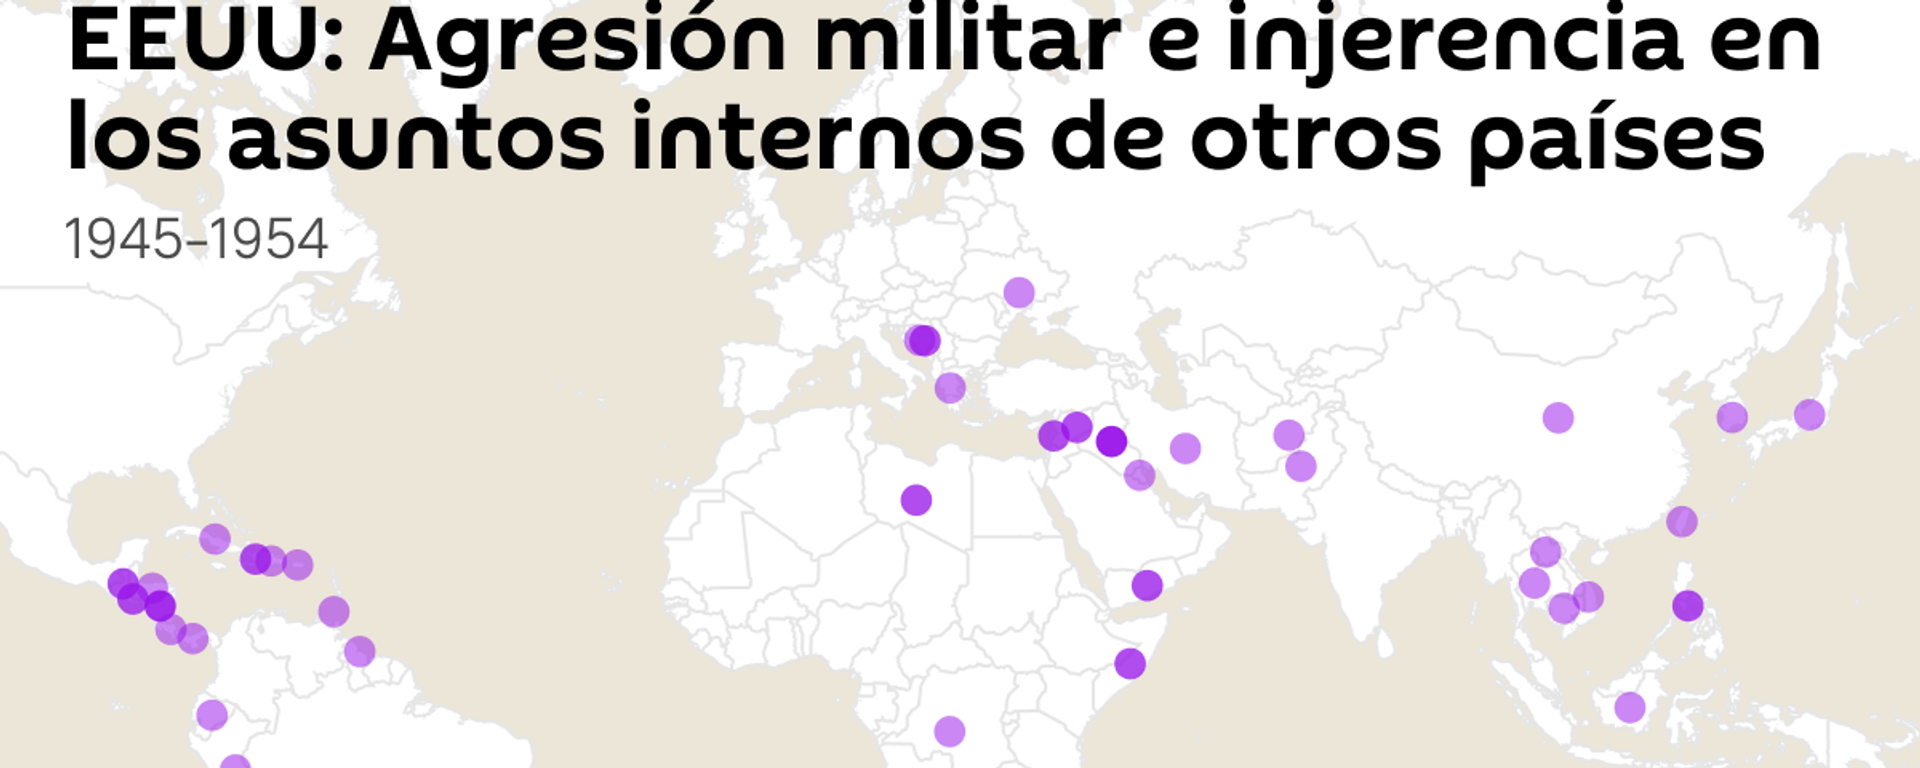 Historia de agresión: operaciones militares e injerencias en otros países por parte de EEUU - Sputnik Mundo, 1920, 29.01.2024